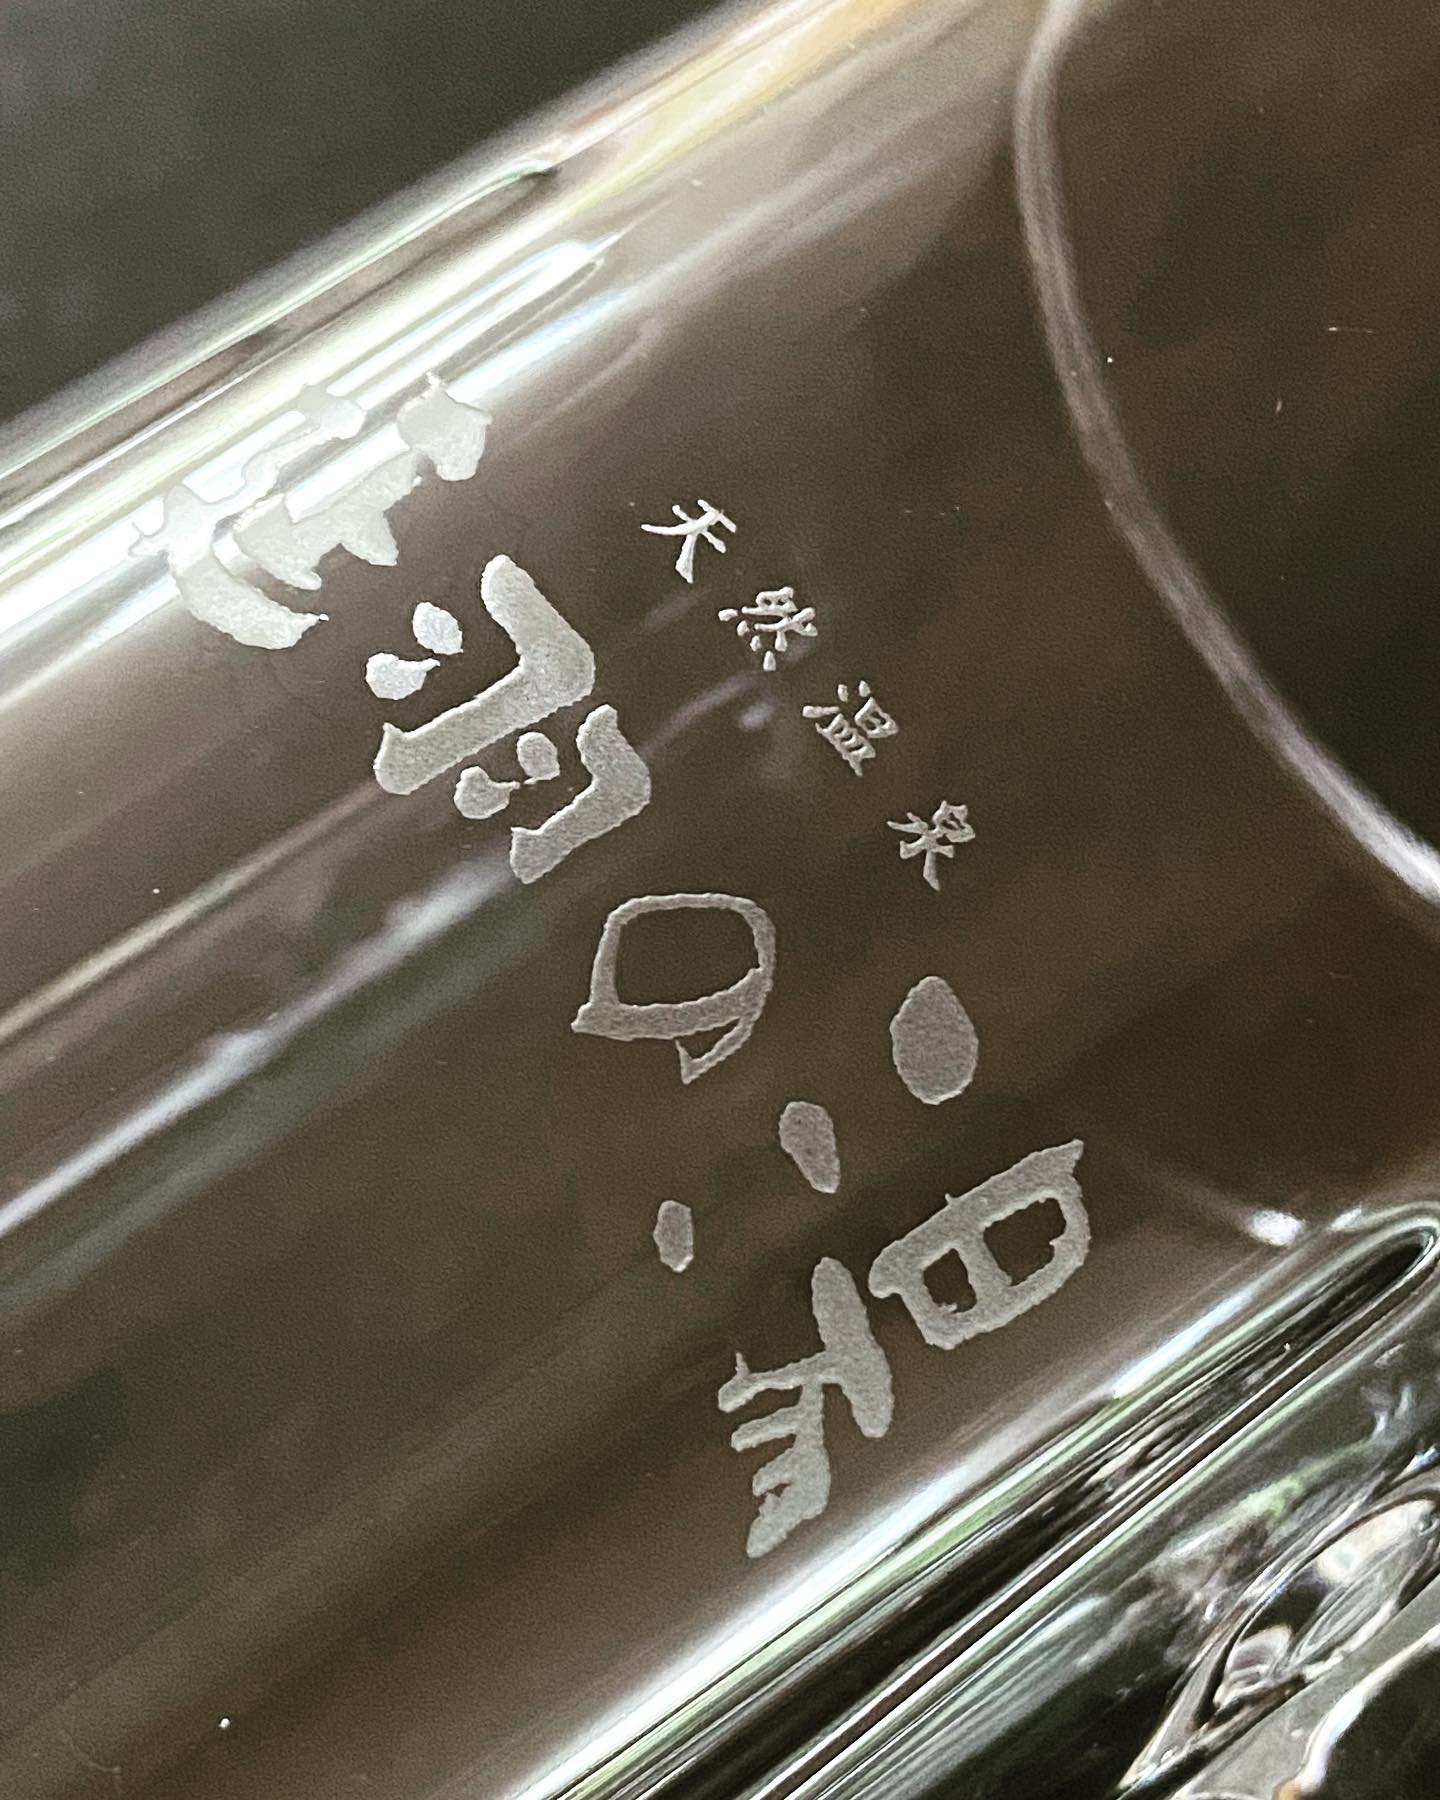 大阪、羽曳野に本店を置く天然温泉延羽の湯様からのご依頼。ビアジョッキやグラスなどへの加工のご依頼で、まずはサンプルを作成いたしました。印象的な筆文字のロゴが美しくグラスに映えます。弊社での加工をご検討のお客様はサンプルの作成も承りますのでお気軽にお問合せください。#ロゴ入りグラス#名入れグラス#ノベルティ#ガラス工房ドットコム